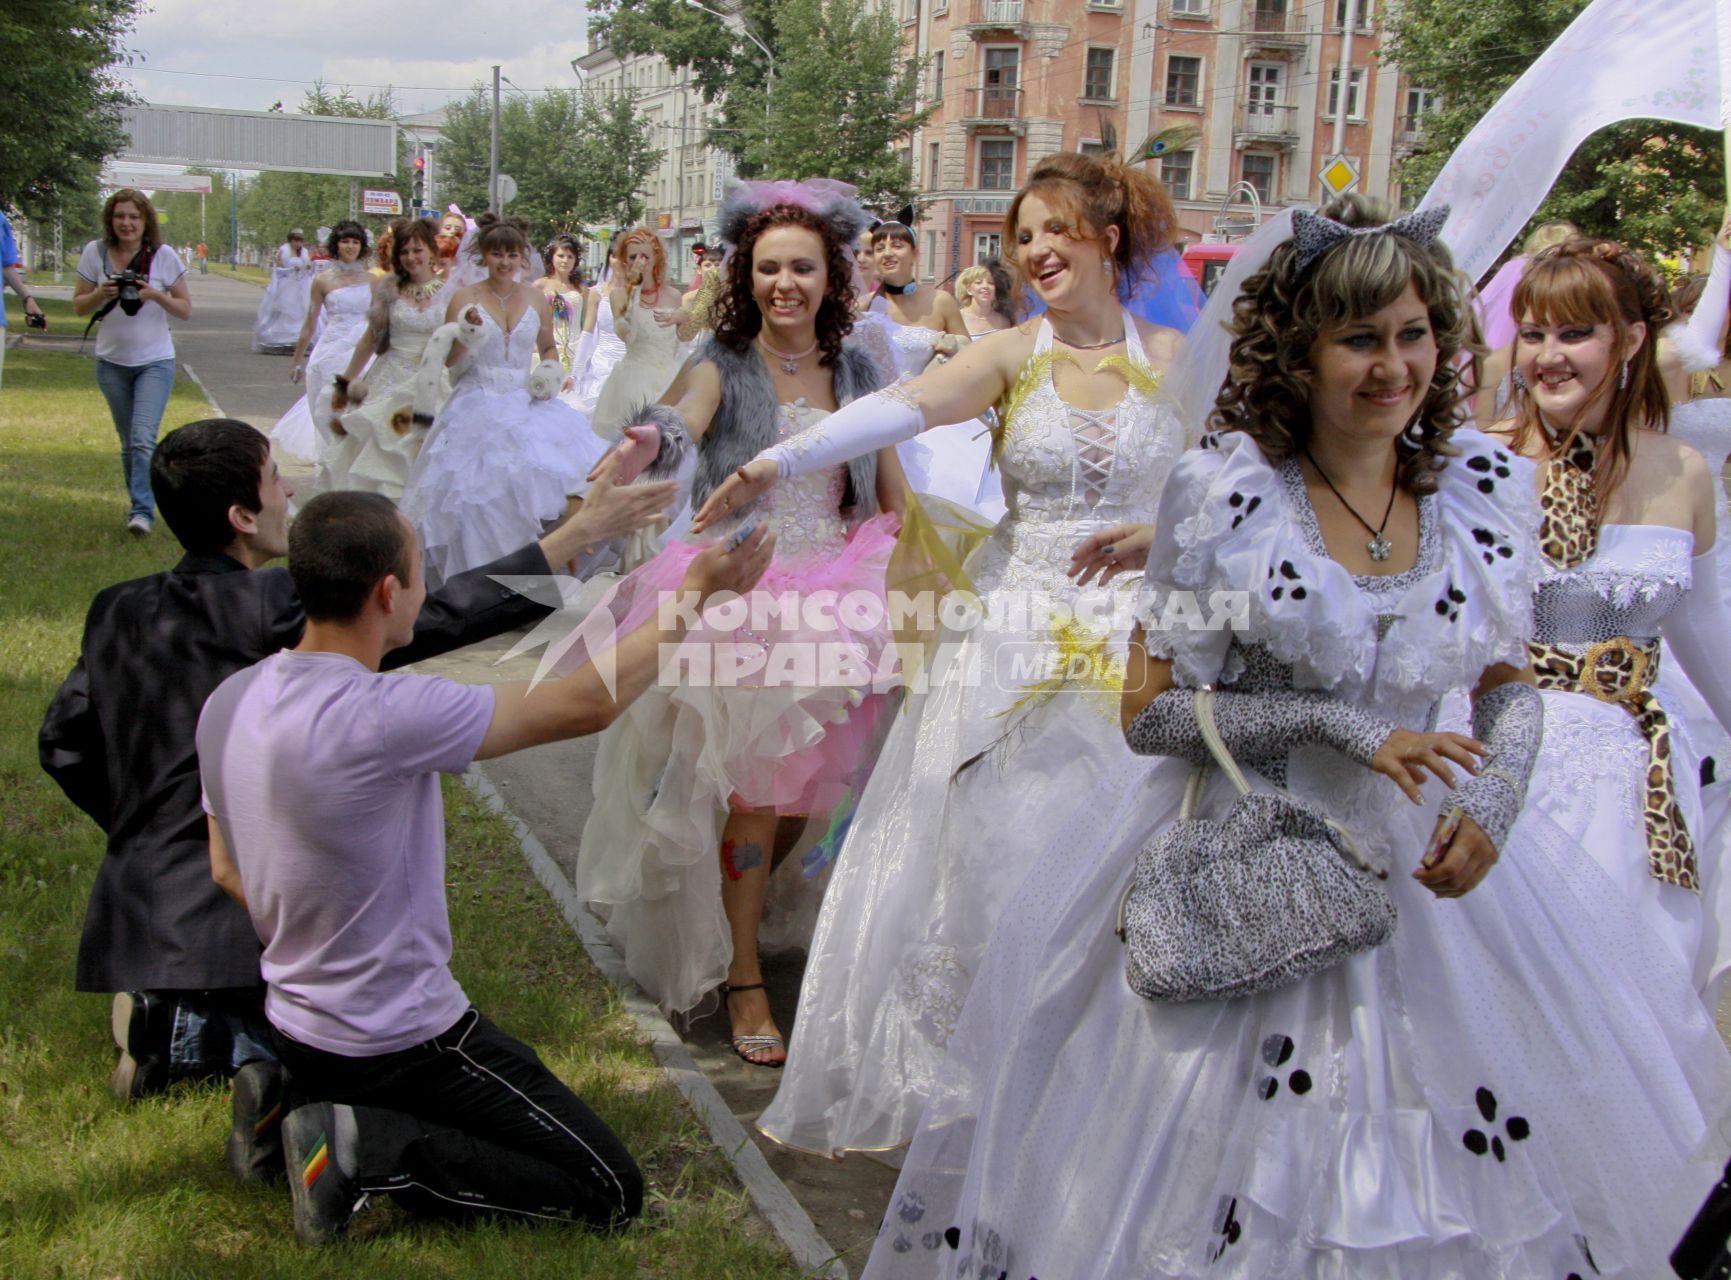 Мужчины приветствуют участниц парада невест стоя на коленях.